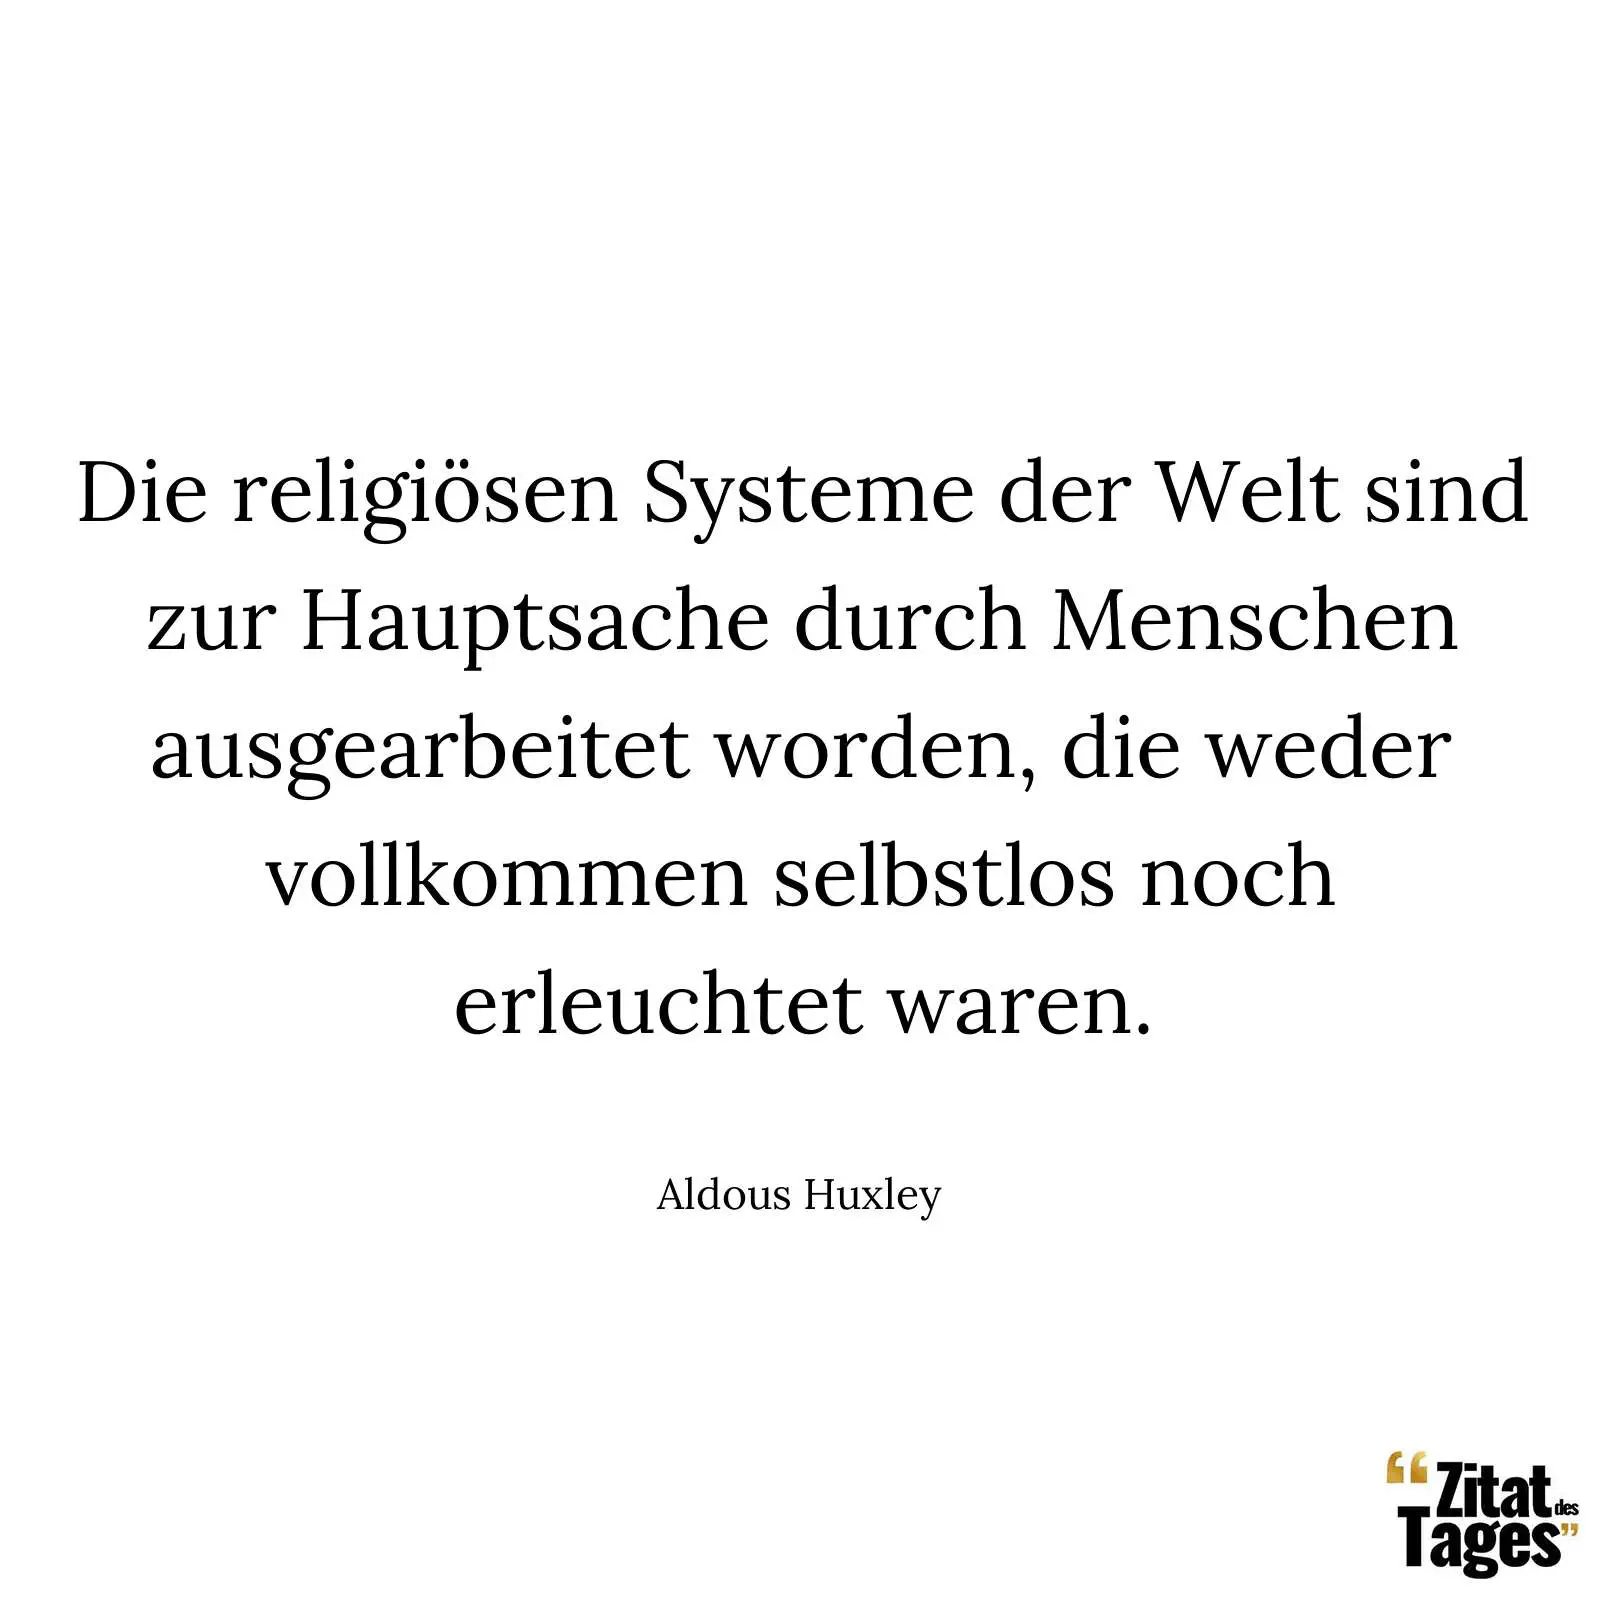 Die religiösen Systeme der Welt sind zur Hauptsache durch Menschen ausgearbeitet worden, die weder vollkommen selbstlos noch erleuchtet waren. - Aldous Huxley